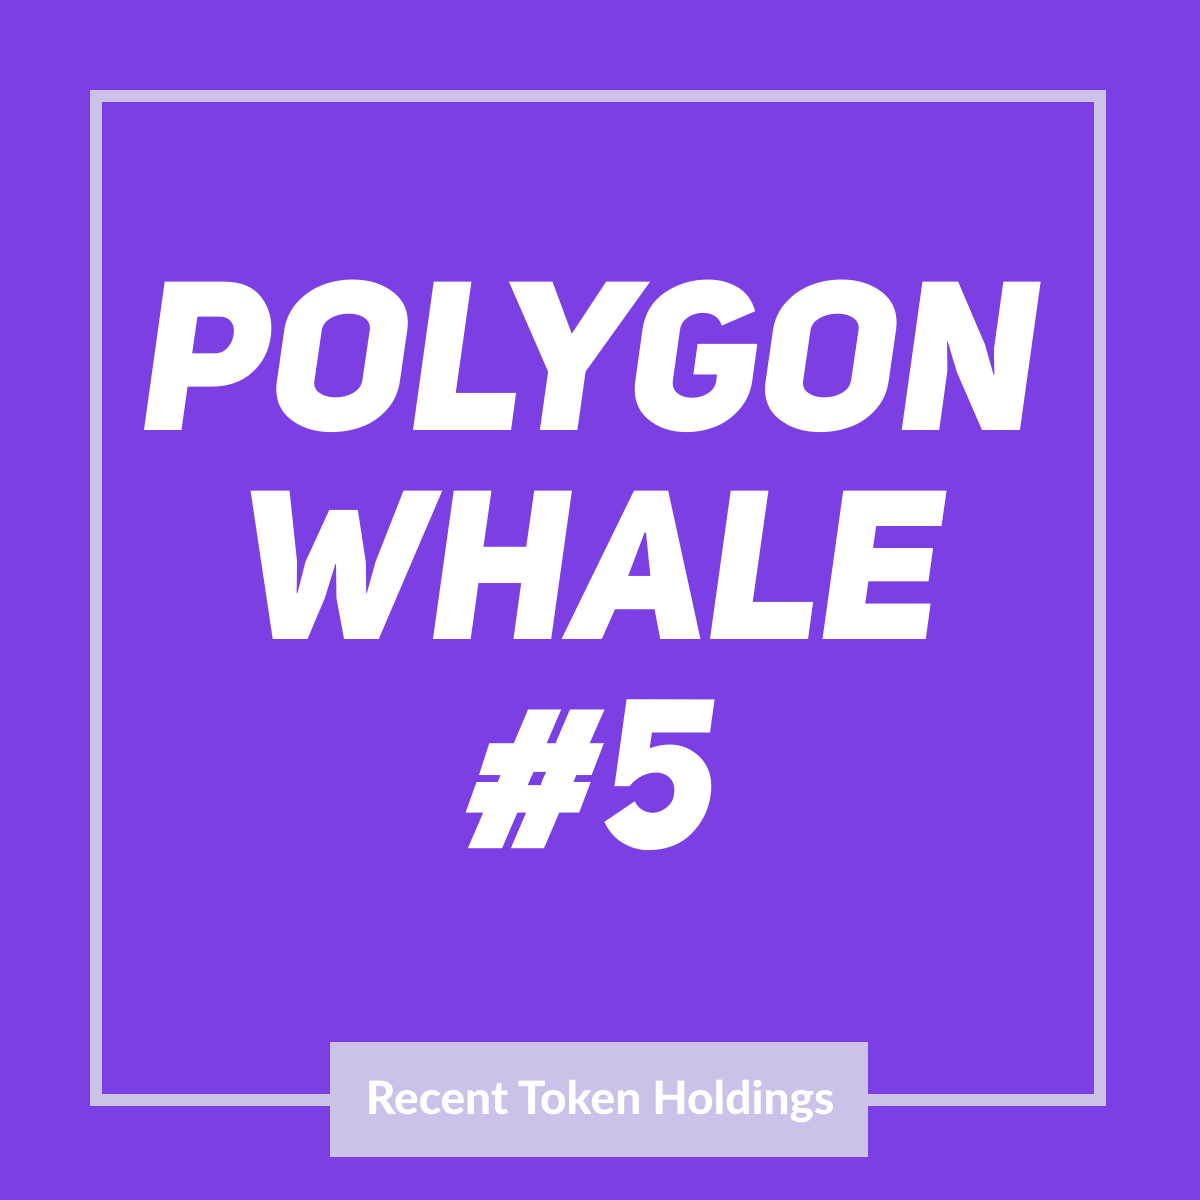 Polygon Whale #5